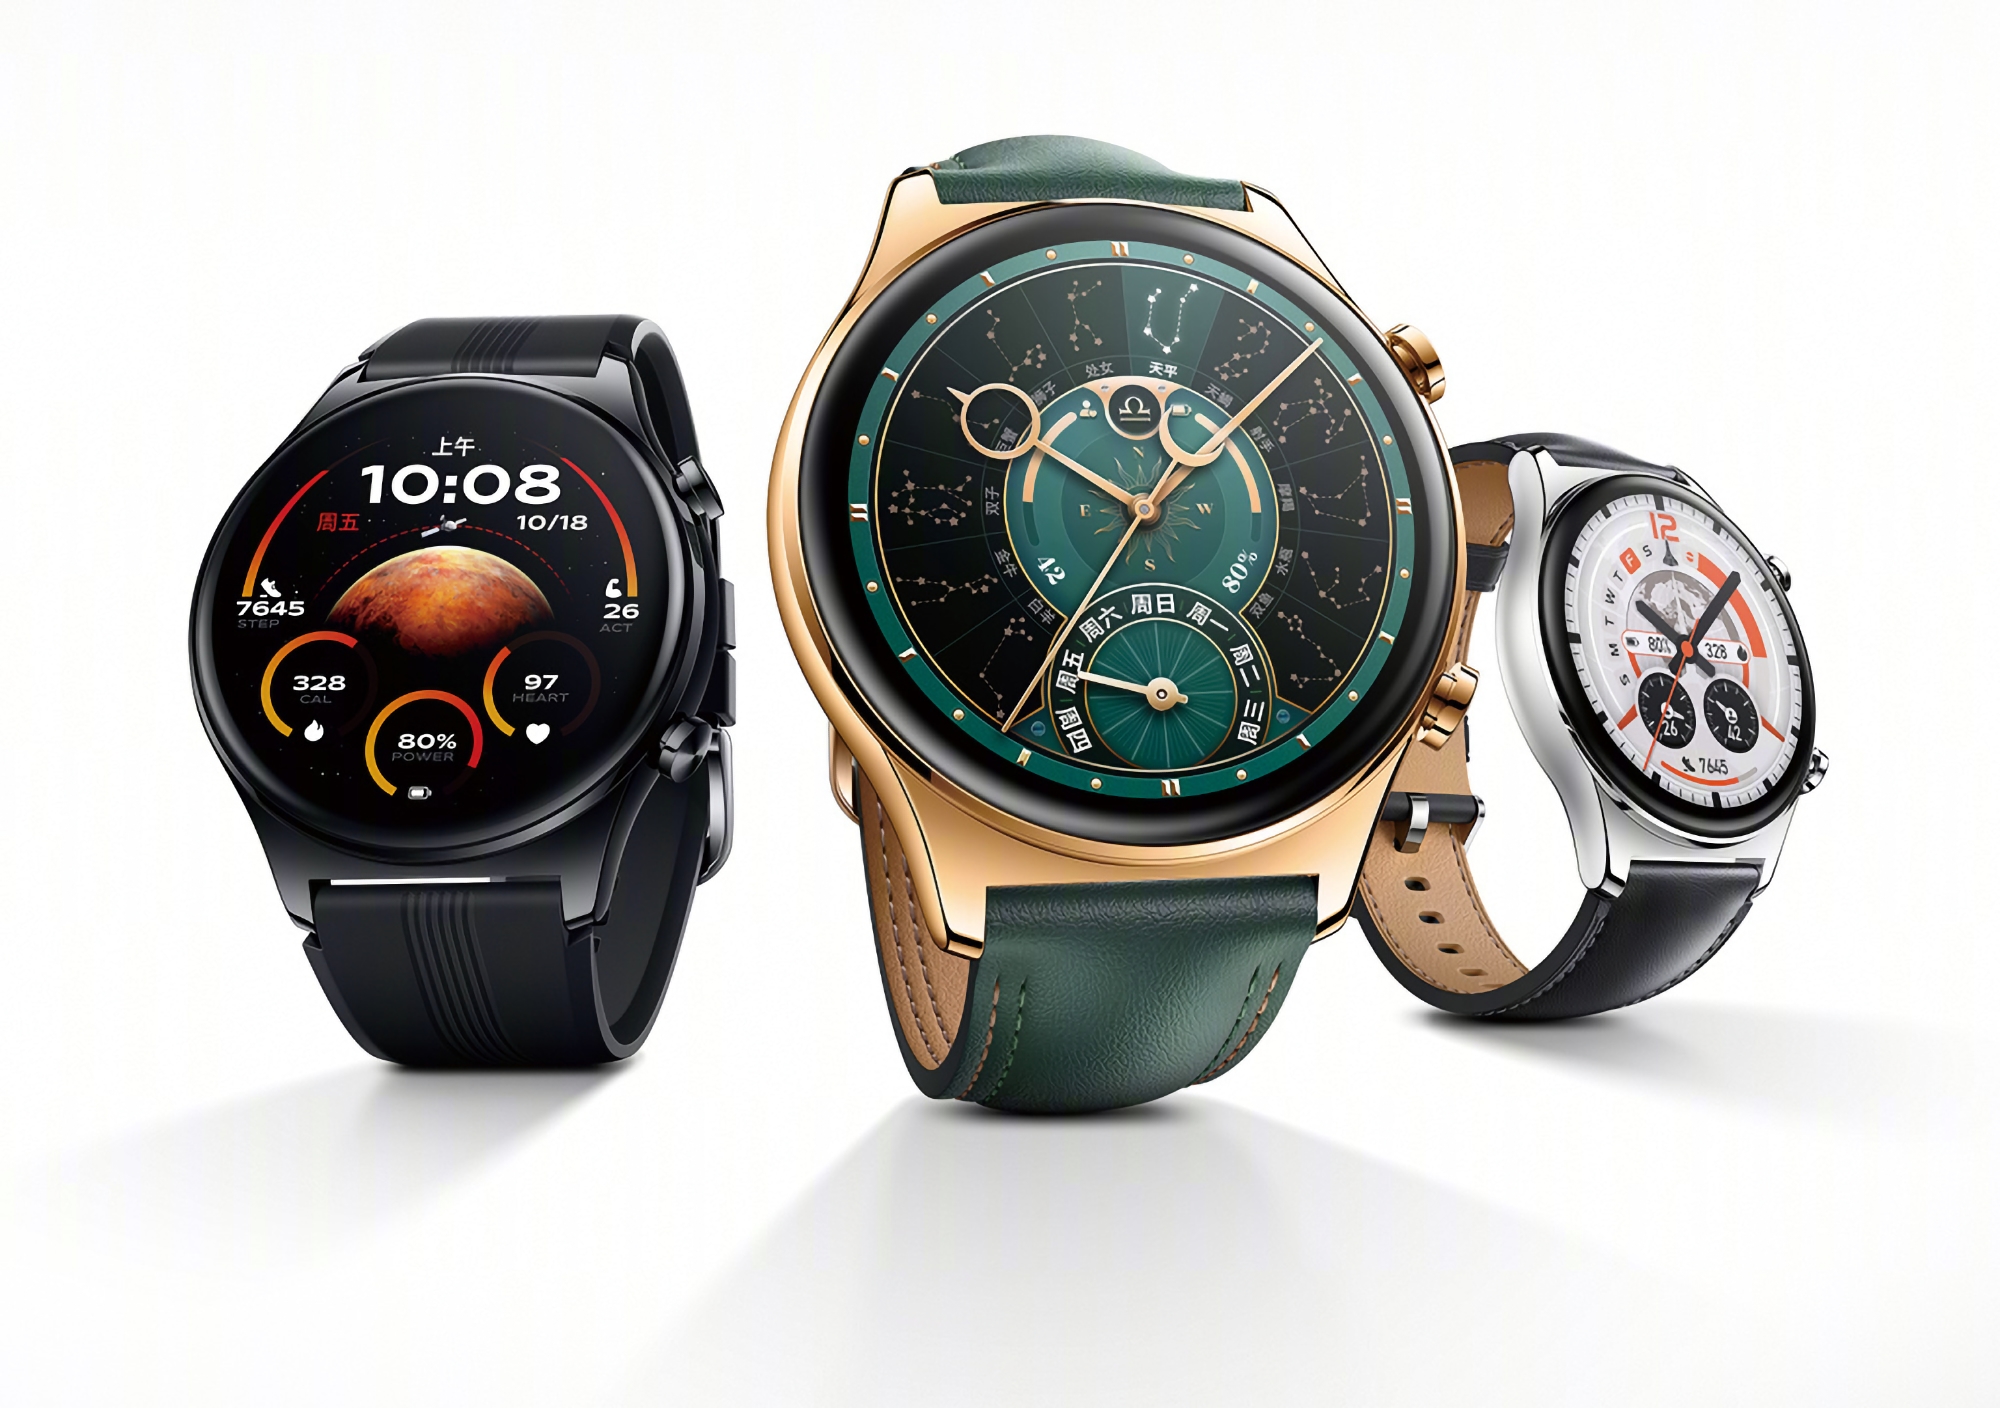 Honor Watch GS 4: wyświetlacz AMOLED, GPS, NFC, czas pracy na baterii do 14 dni i cena od 139 USD